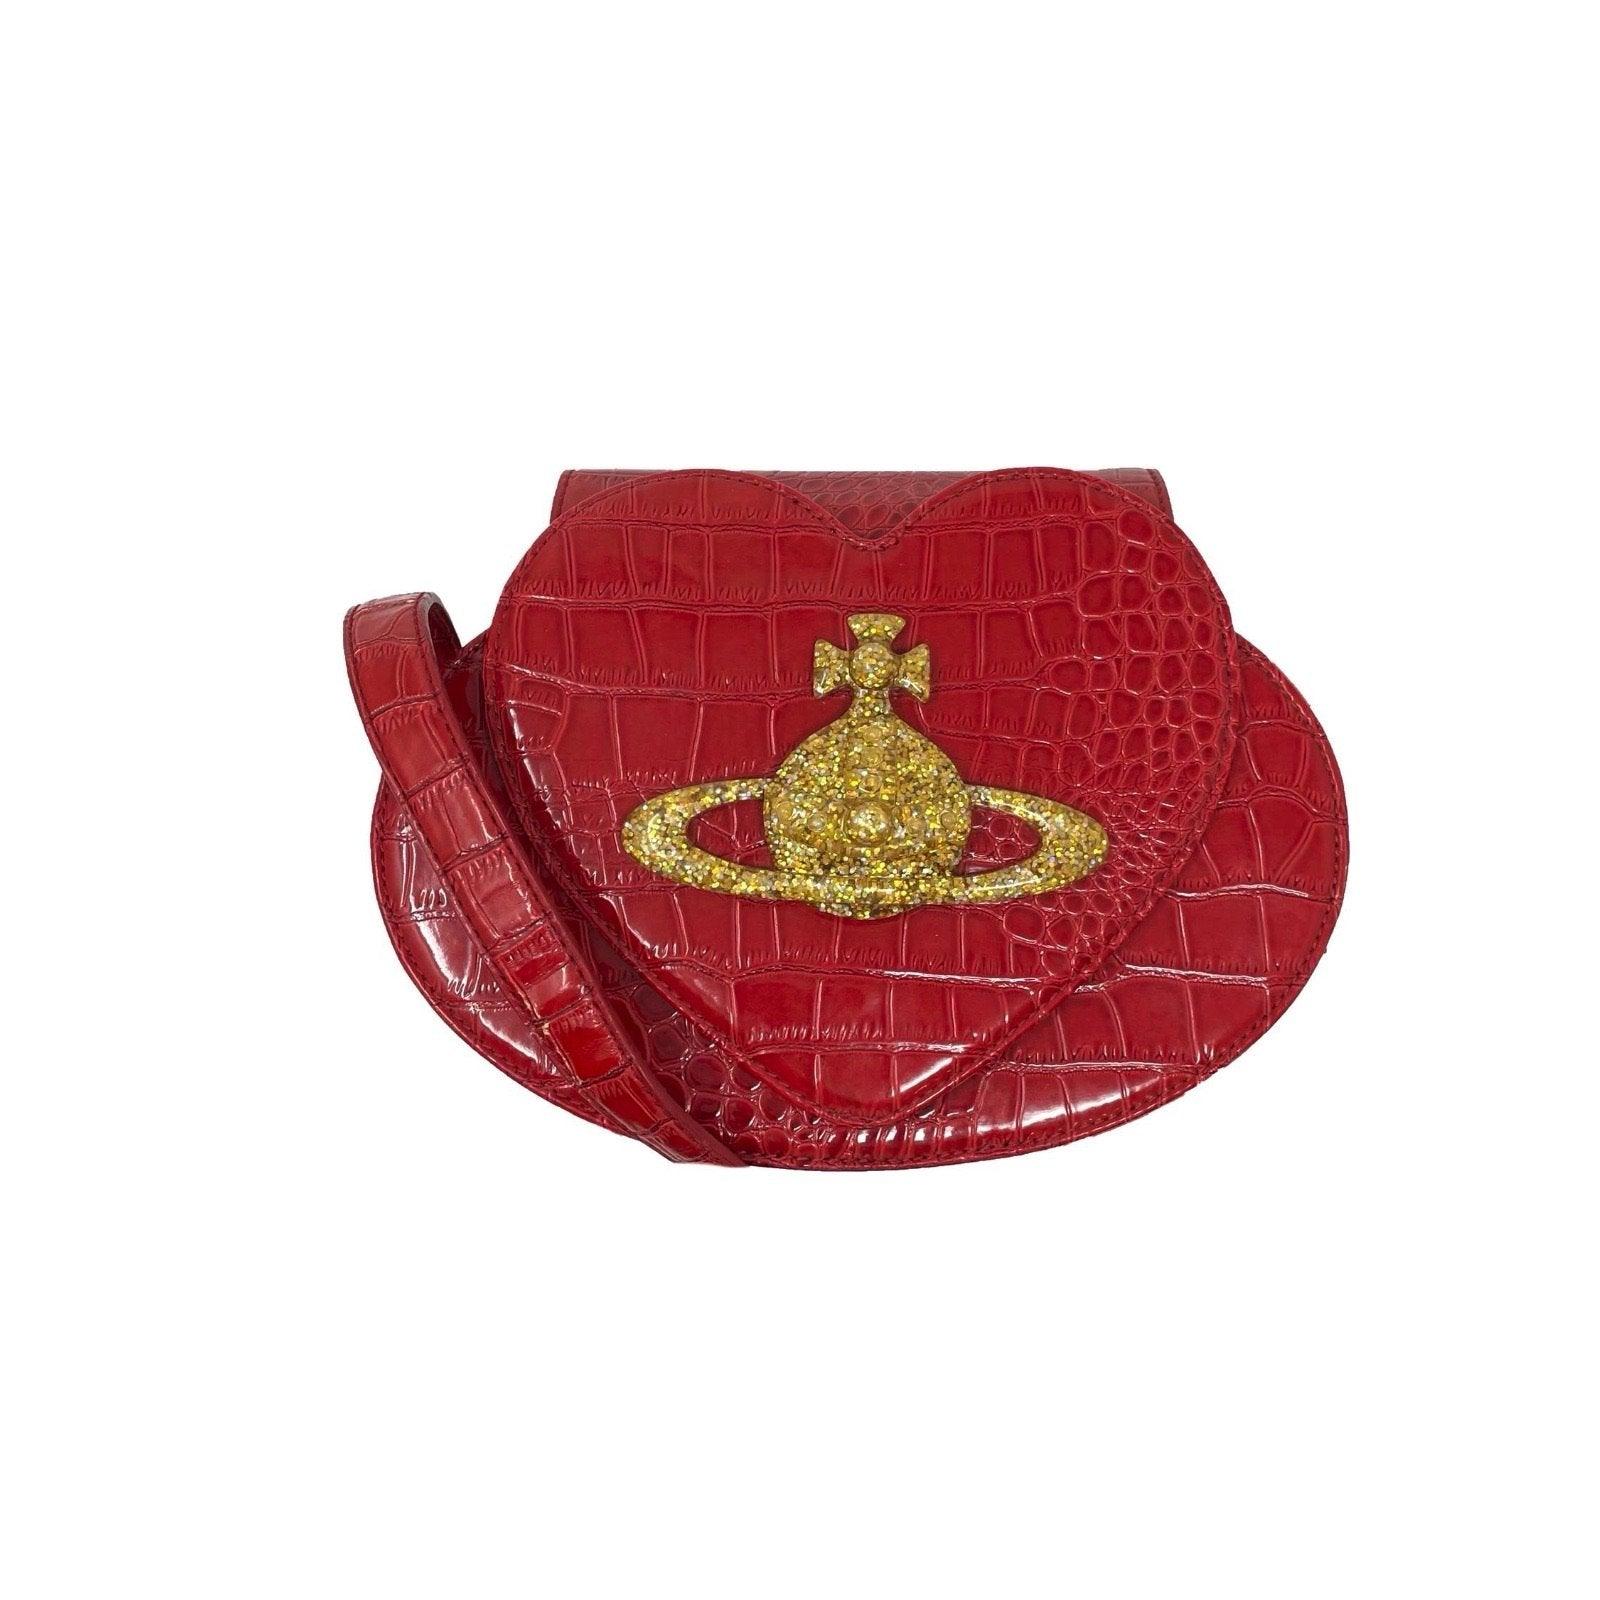 Vivienne Westwood Red Heart Crossbody Bag - Handbags